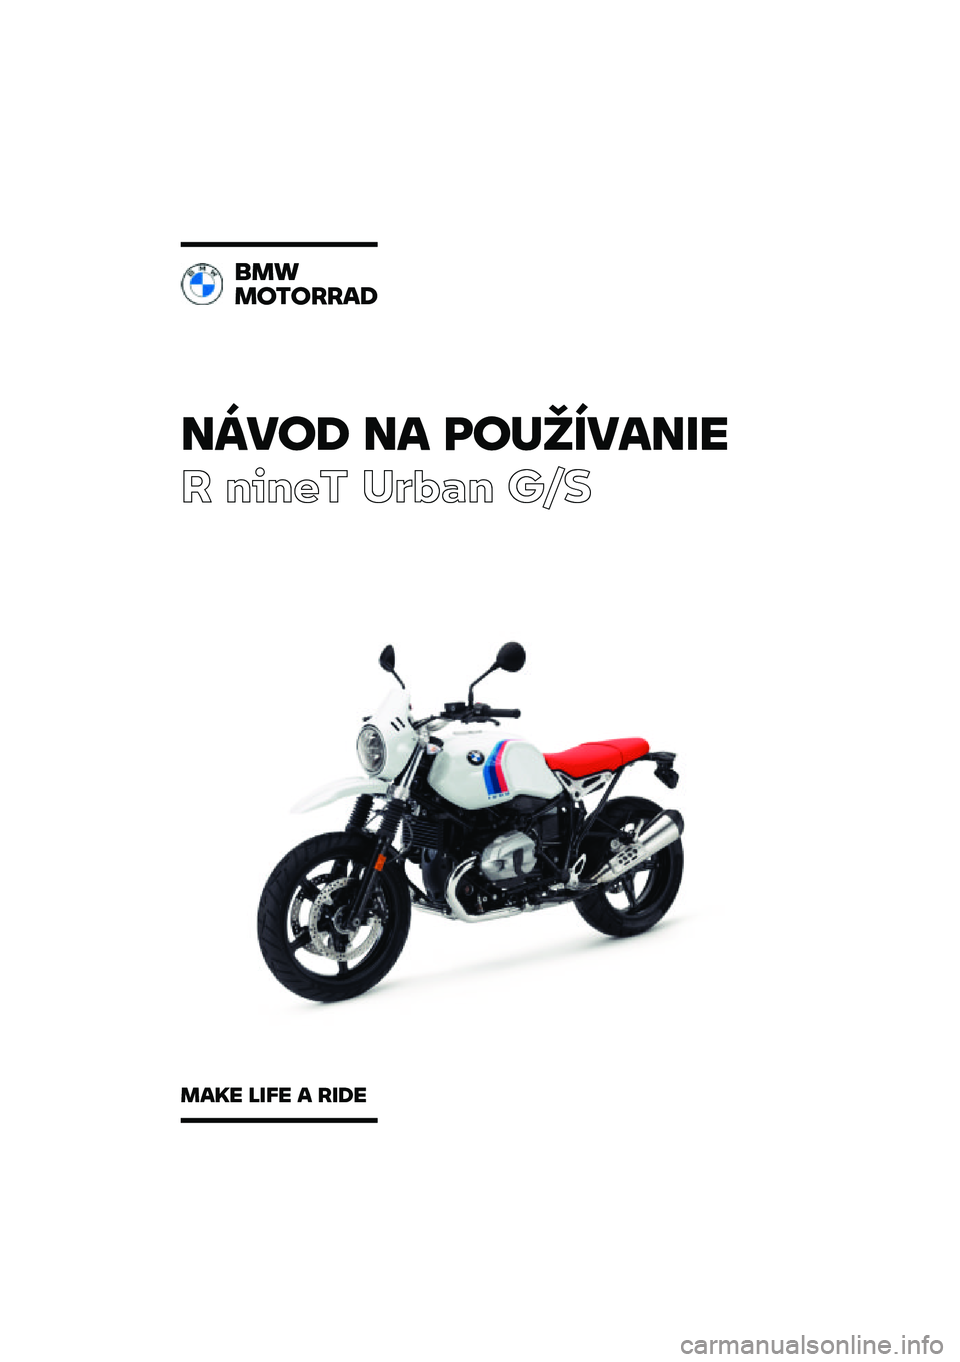 BMW MOTORRAD R NINE T URVAN G/S 2021  Návod na používanie (in Slovak) �����\b �� �	��
�������
� ����� ��\b�	�
� ��\f�
���
��������\b
���� ���� � ���\b� 